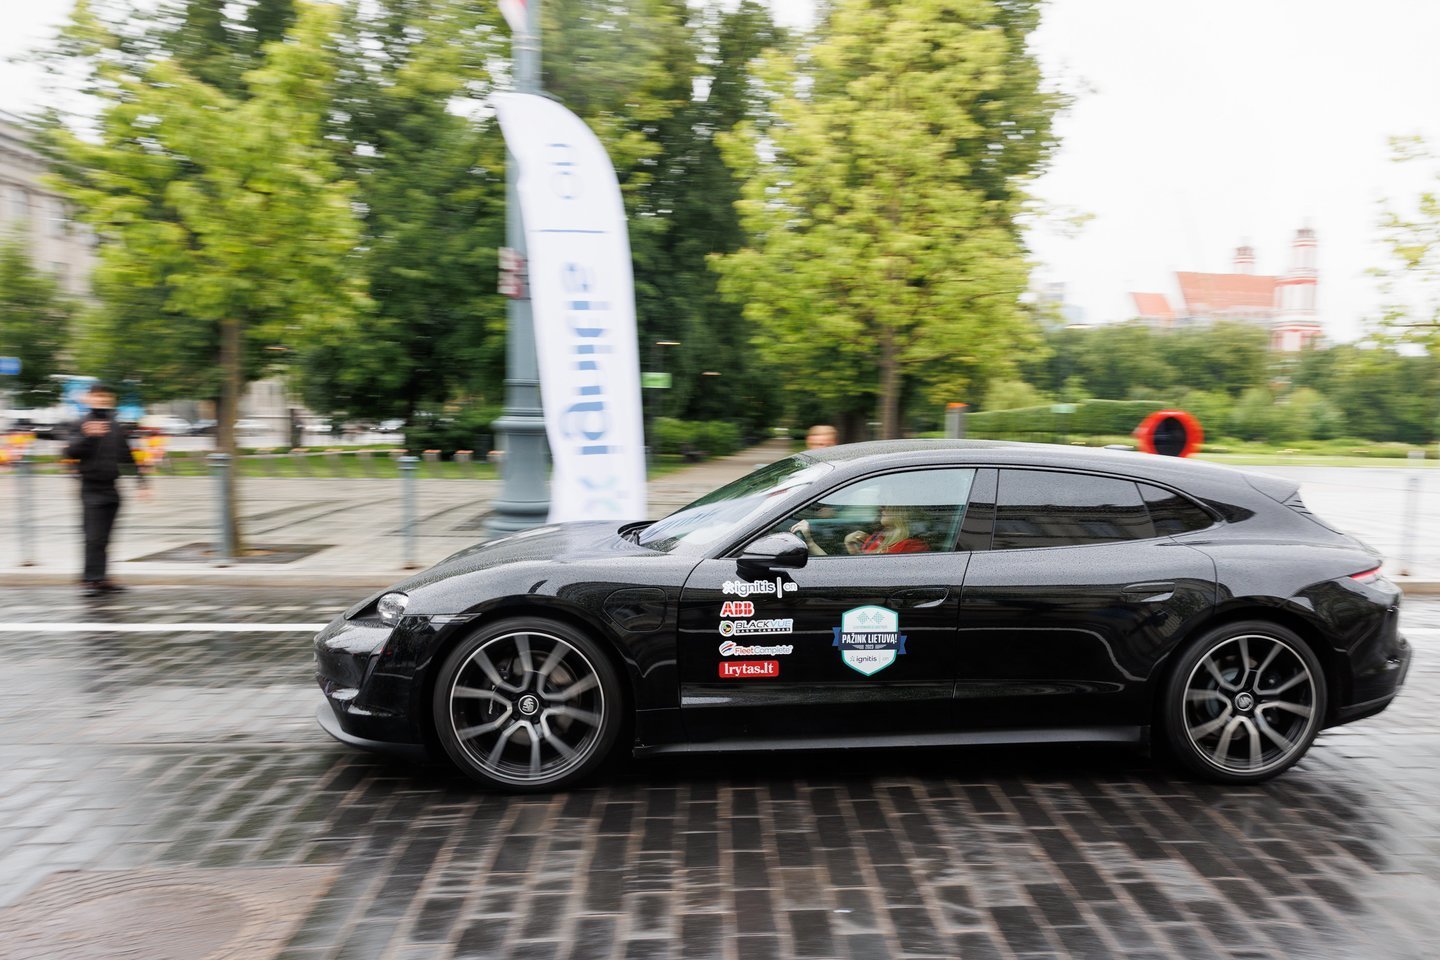 Jau devintą kartą vykusiose elektromobilių varžybose prie starto Vilniaus Gedimino prospekte stojo 3 dešimtys ekipažų.<br> T.Bauro nuotr.